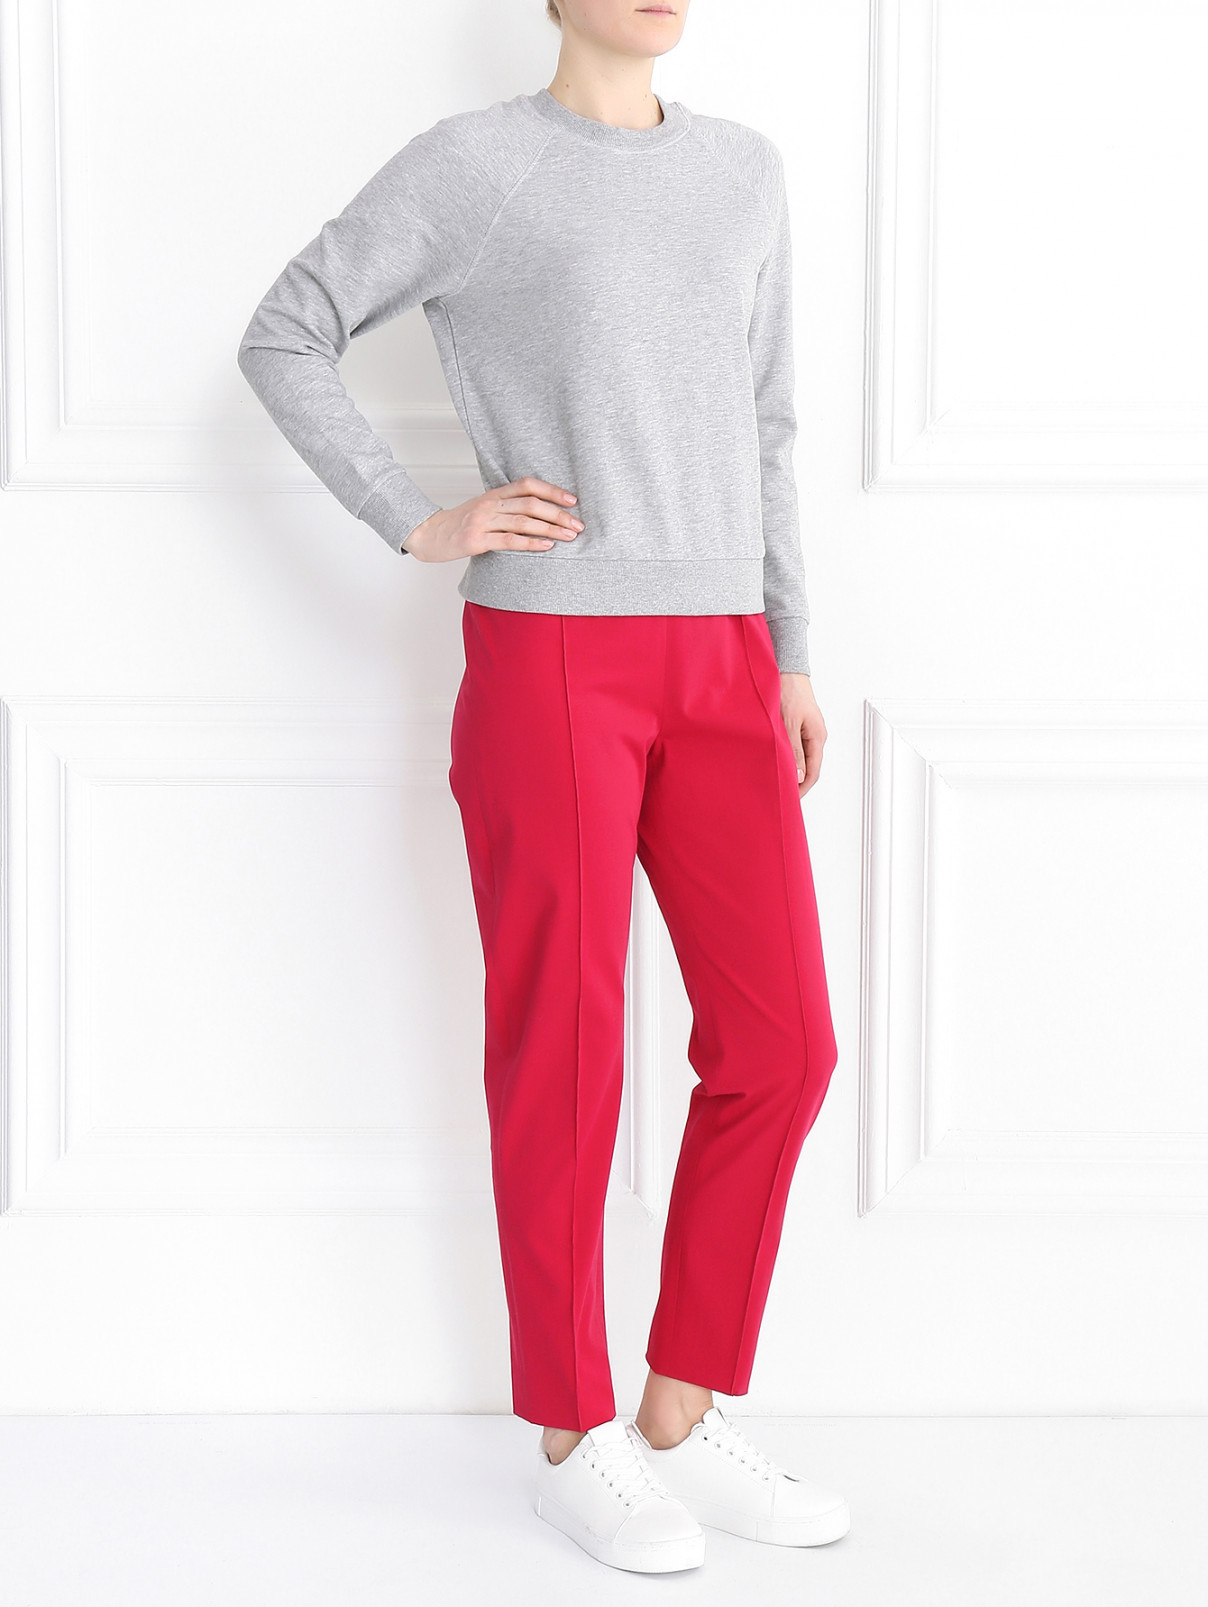 Укороченные брюки из хлопка Max Mara  –  Модель Общий вид  – Цвет:  Розовый